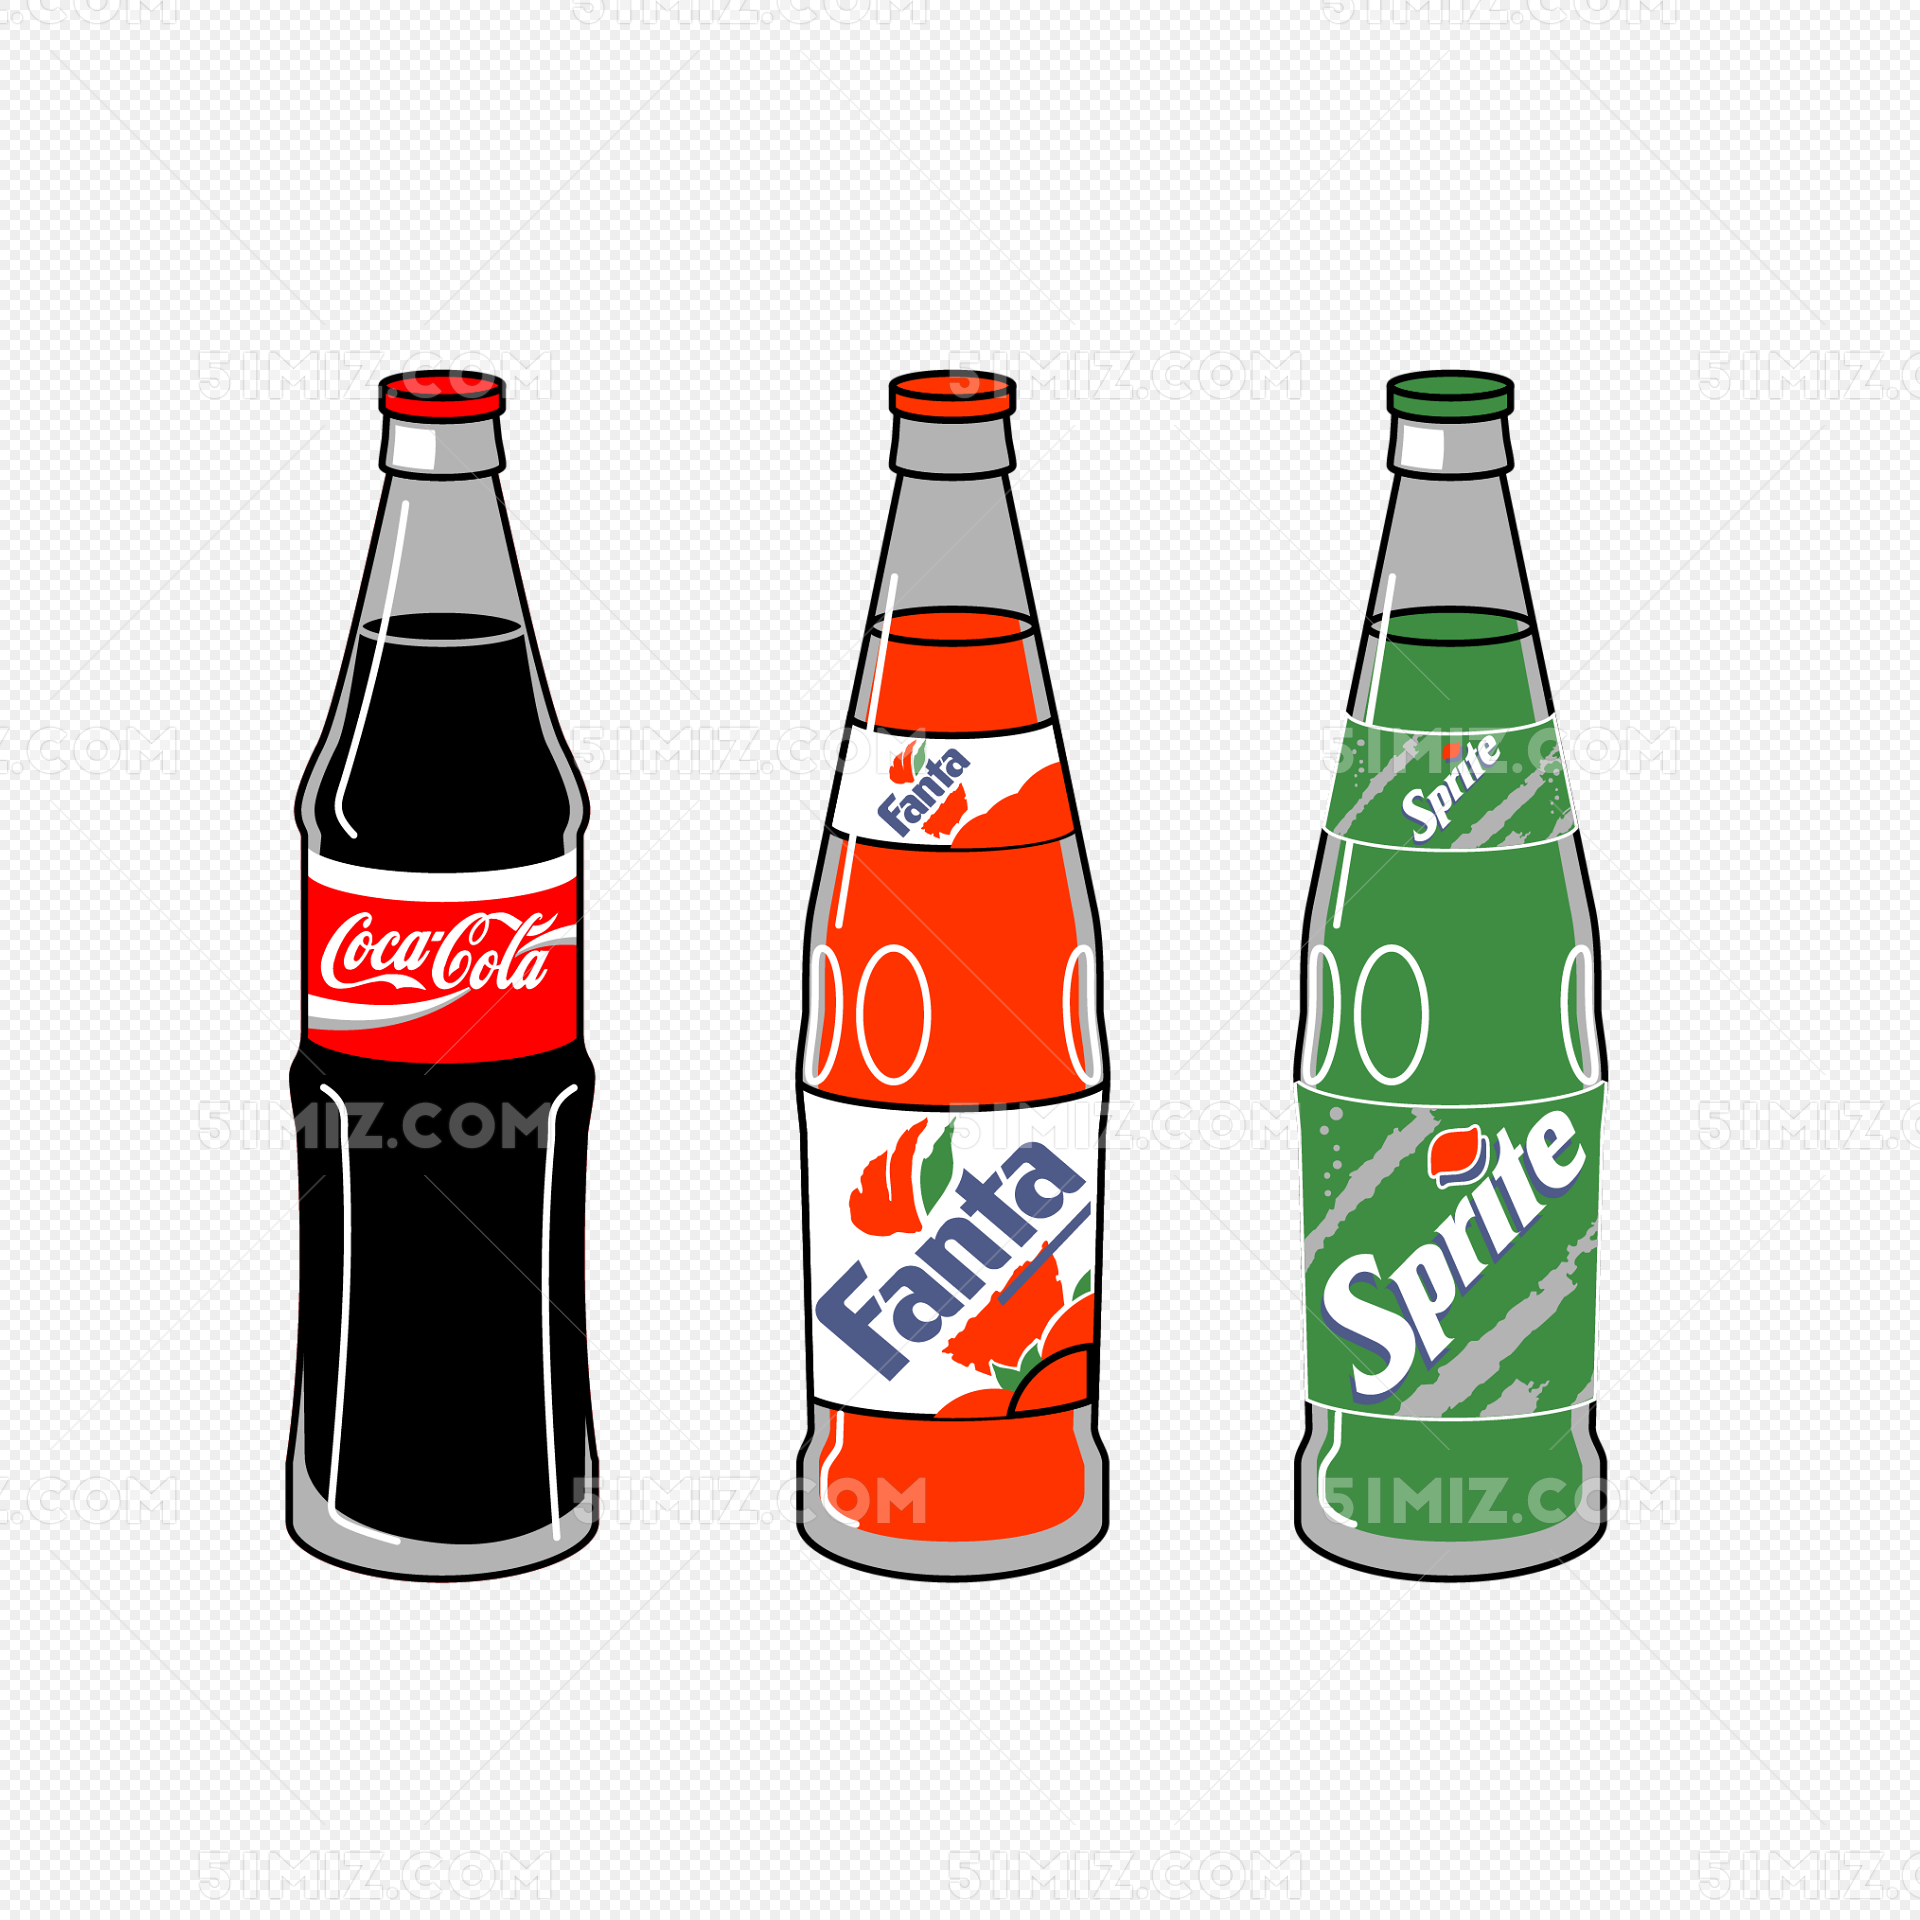 百事可乐：美国百事公司推出的一种碳酸饮料 - 普象网